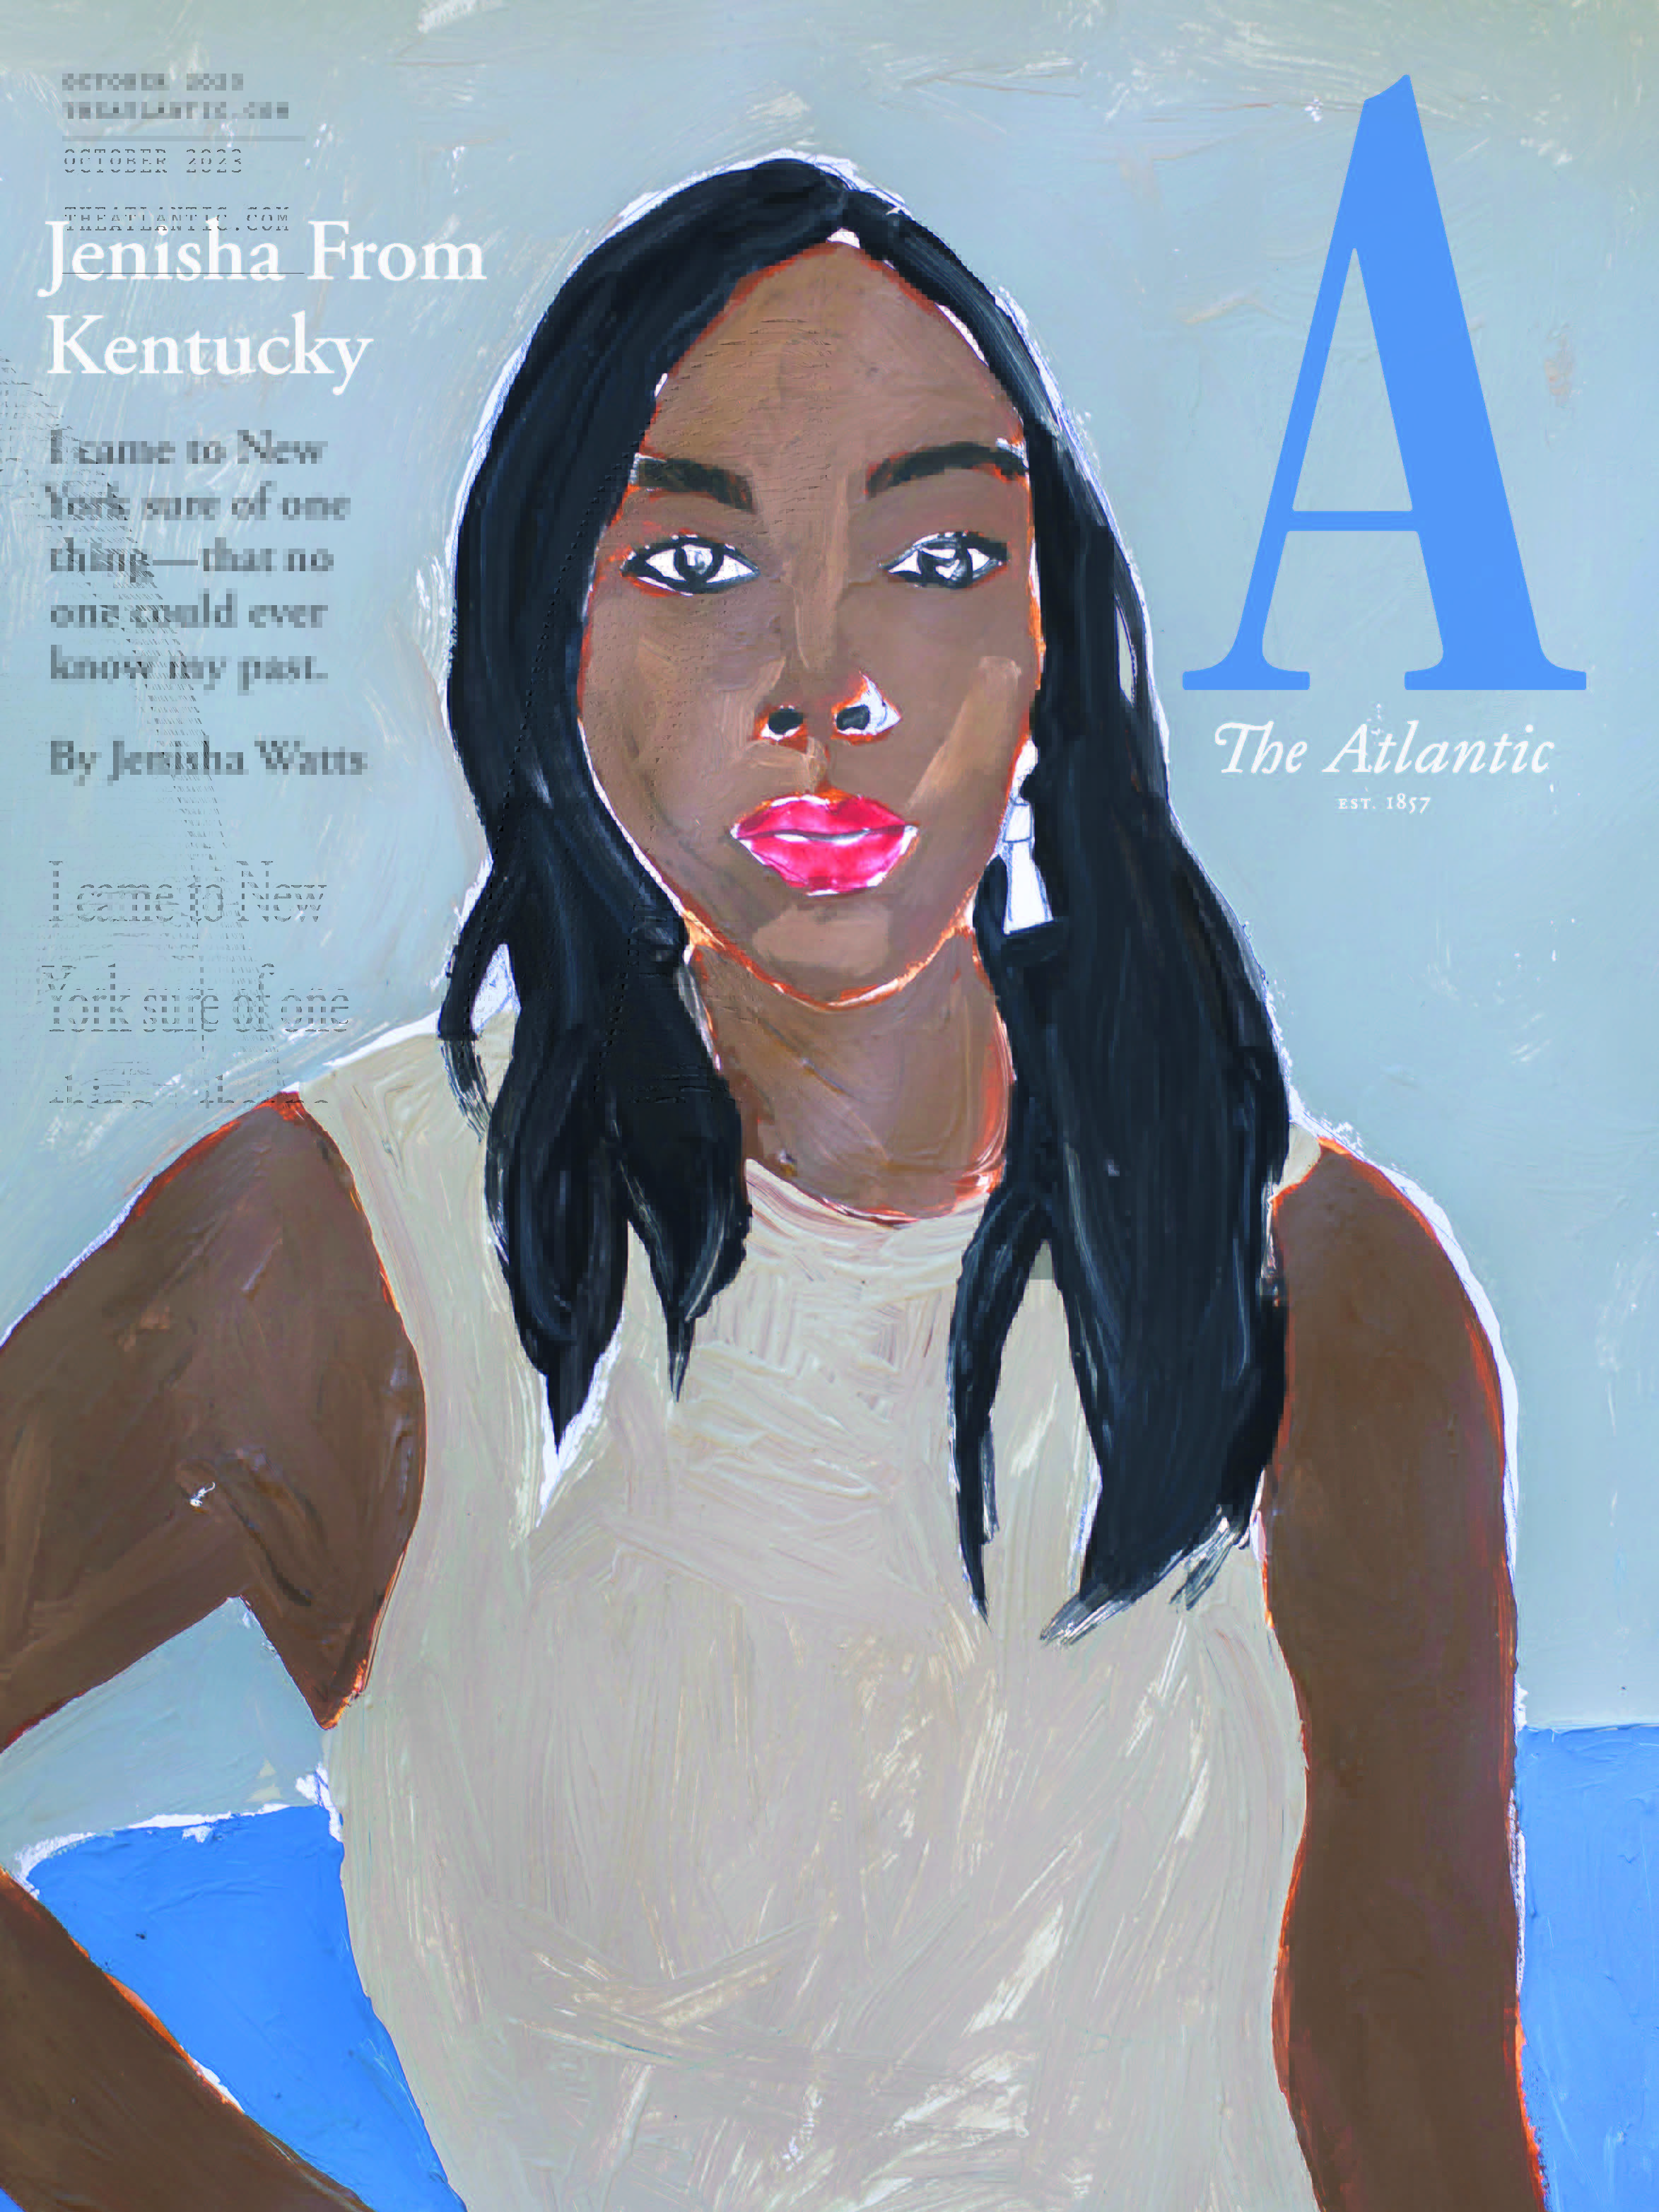 The Atlantic - “Jenisha From Kentucky," October 2023